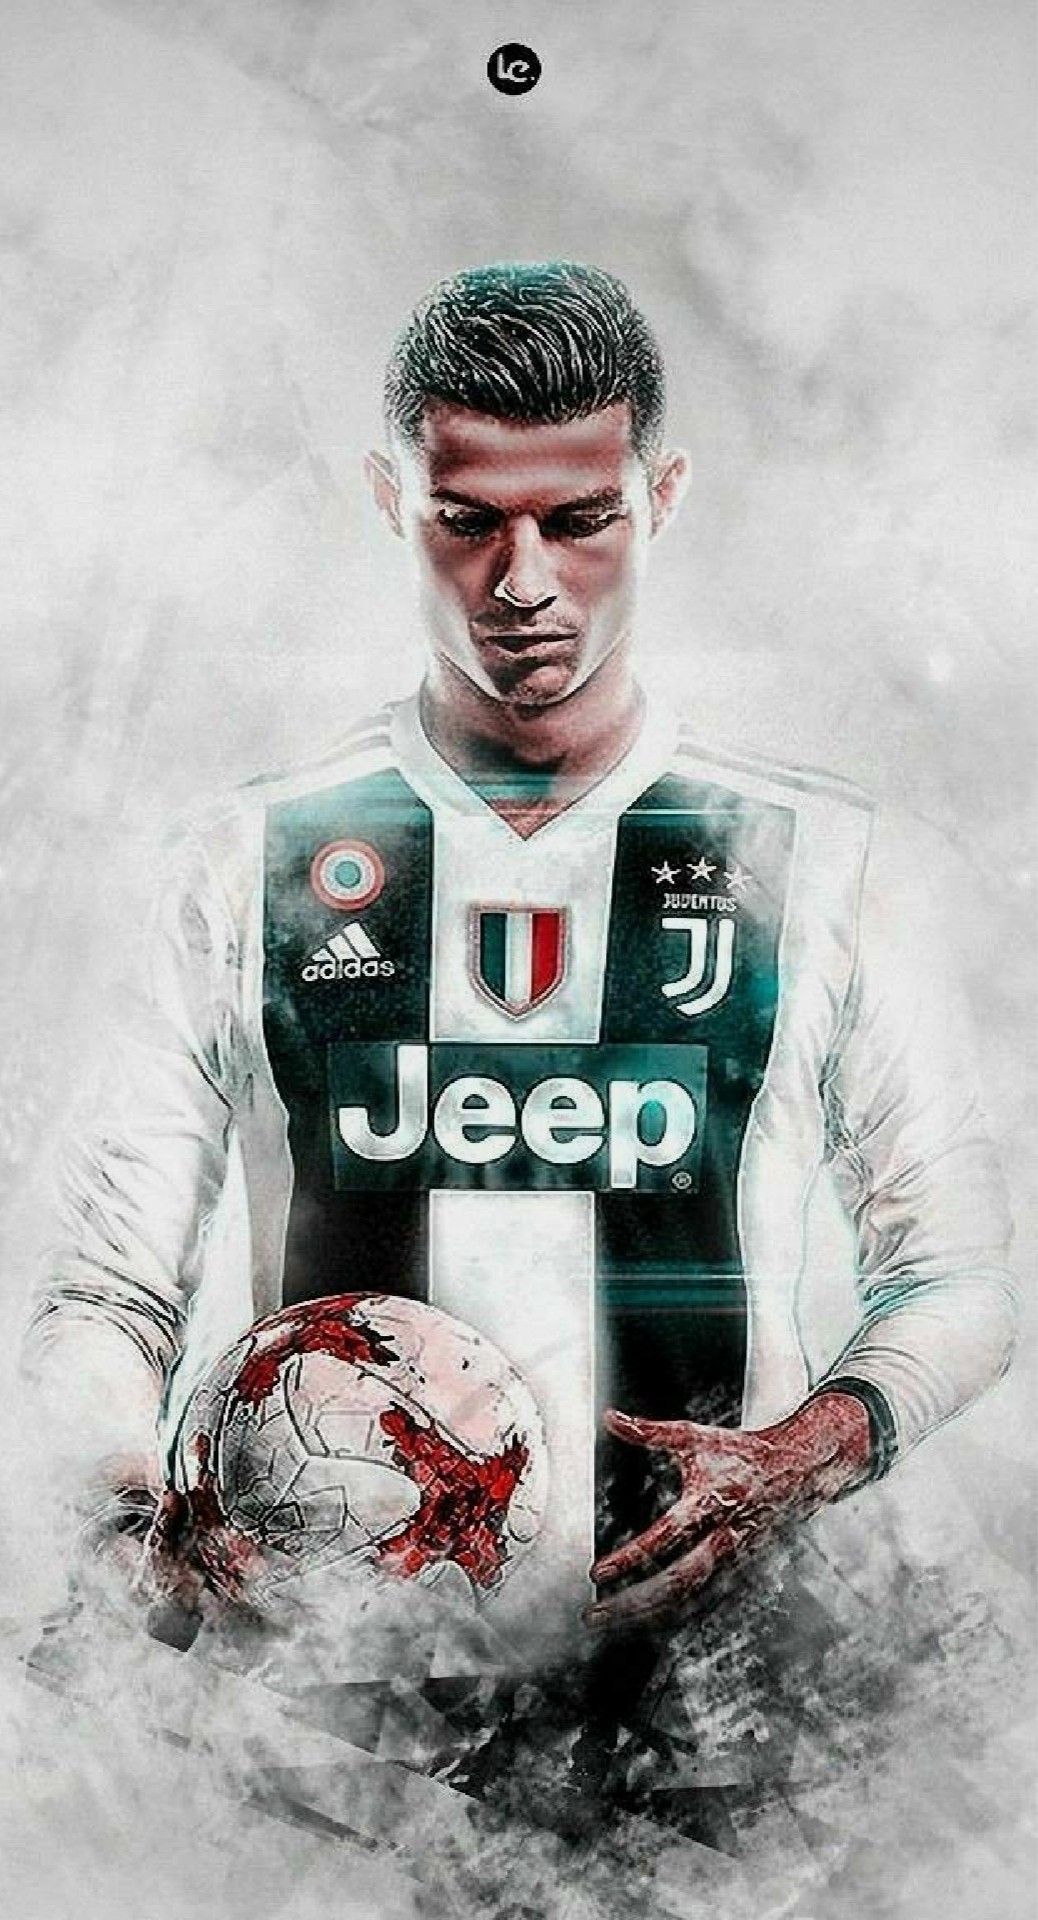 43+ Ronaldo 2020 Wallpapers on WallpaperSafari